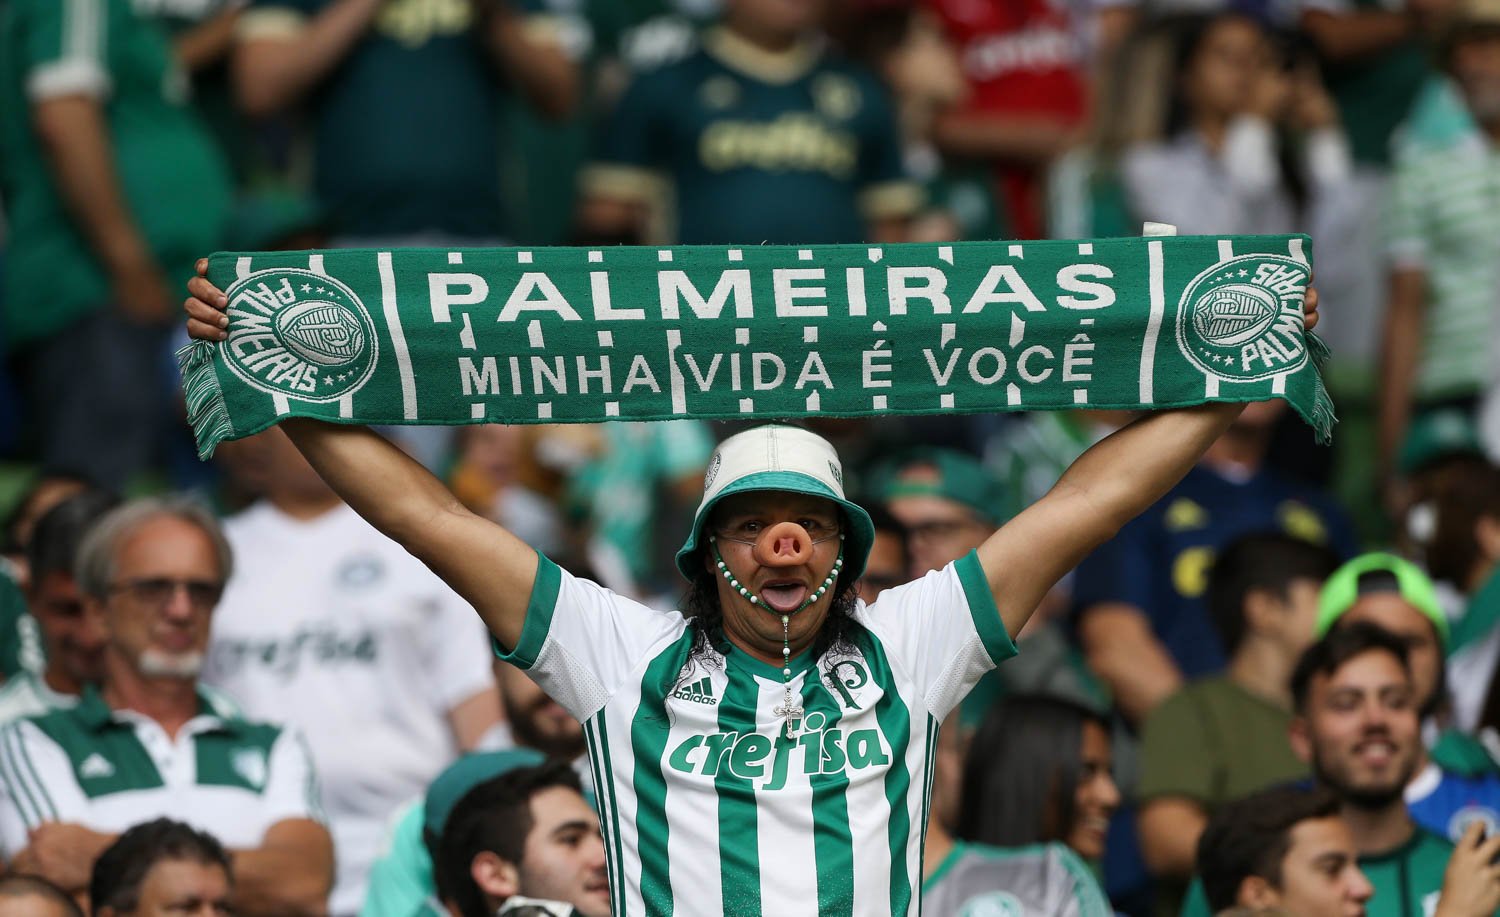 Imagem da torcida do Palmeiras vibrando intensamente no estádio